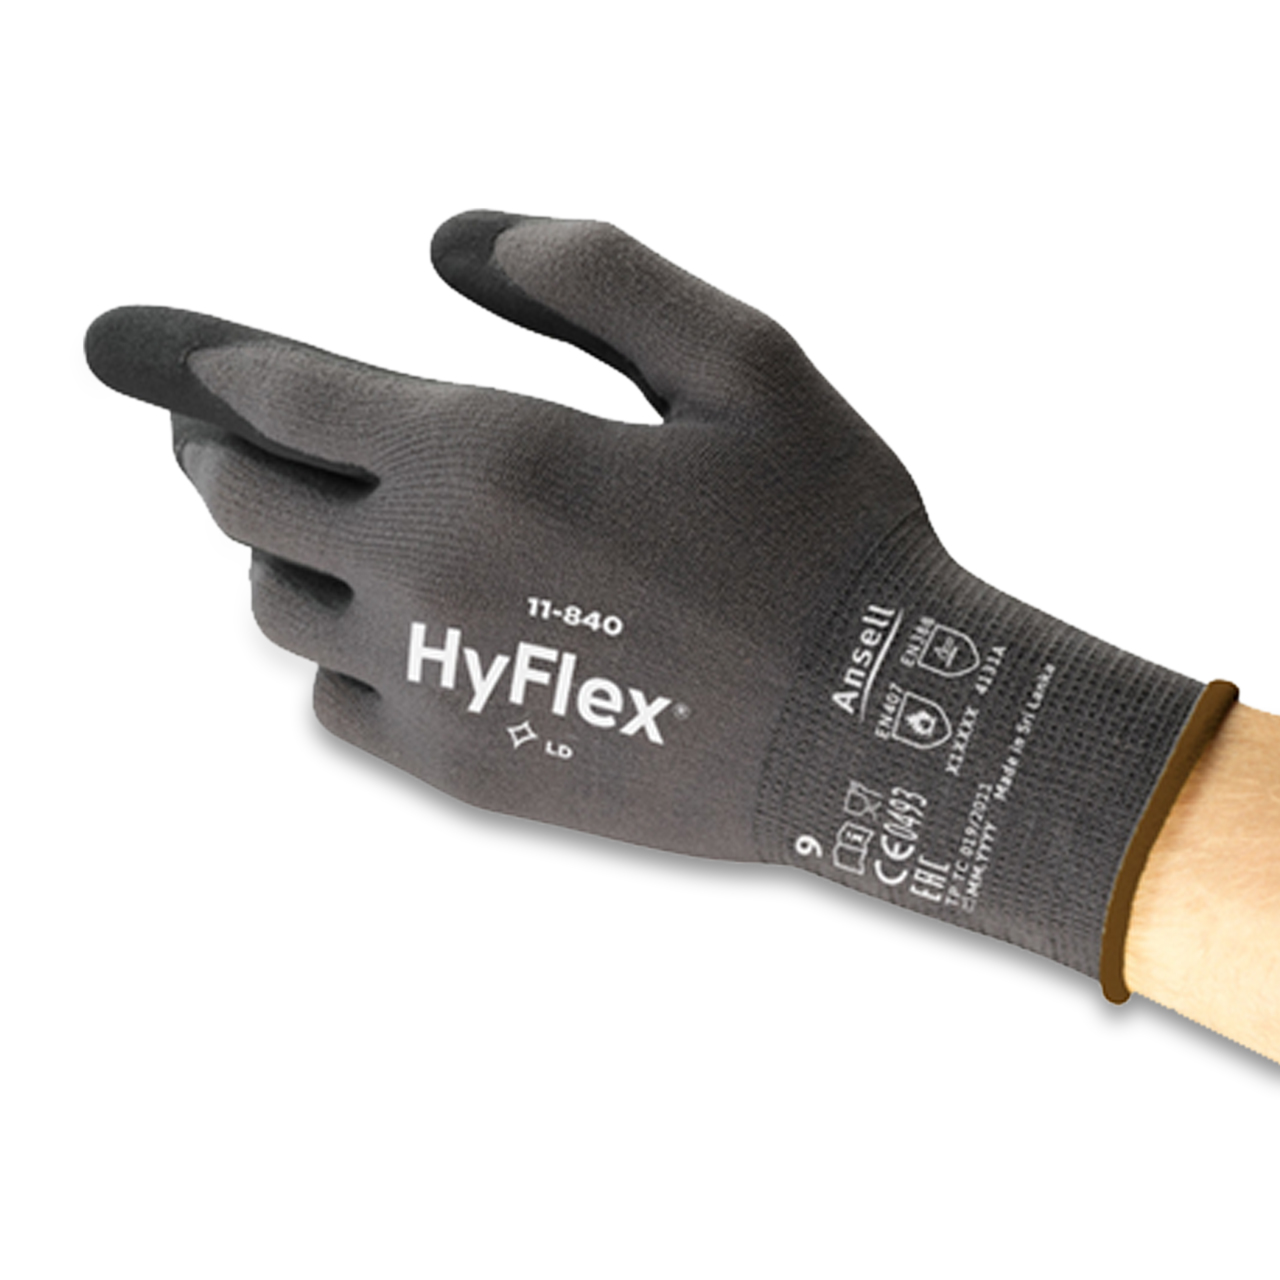 HyFlex® 11-840 L